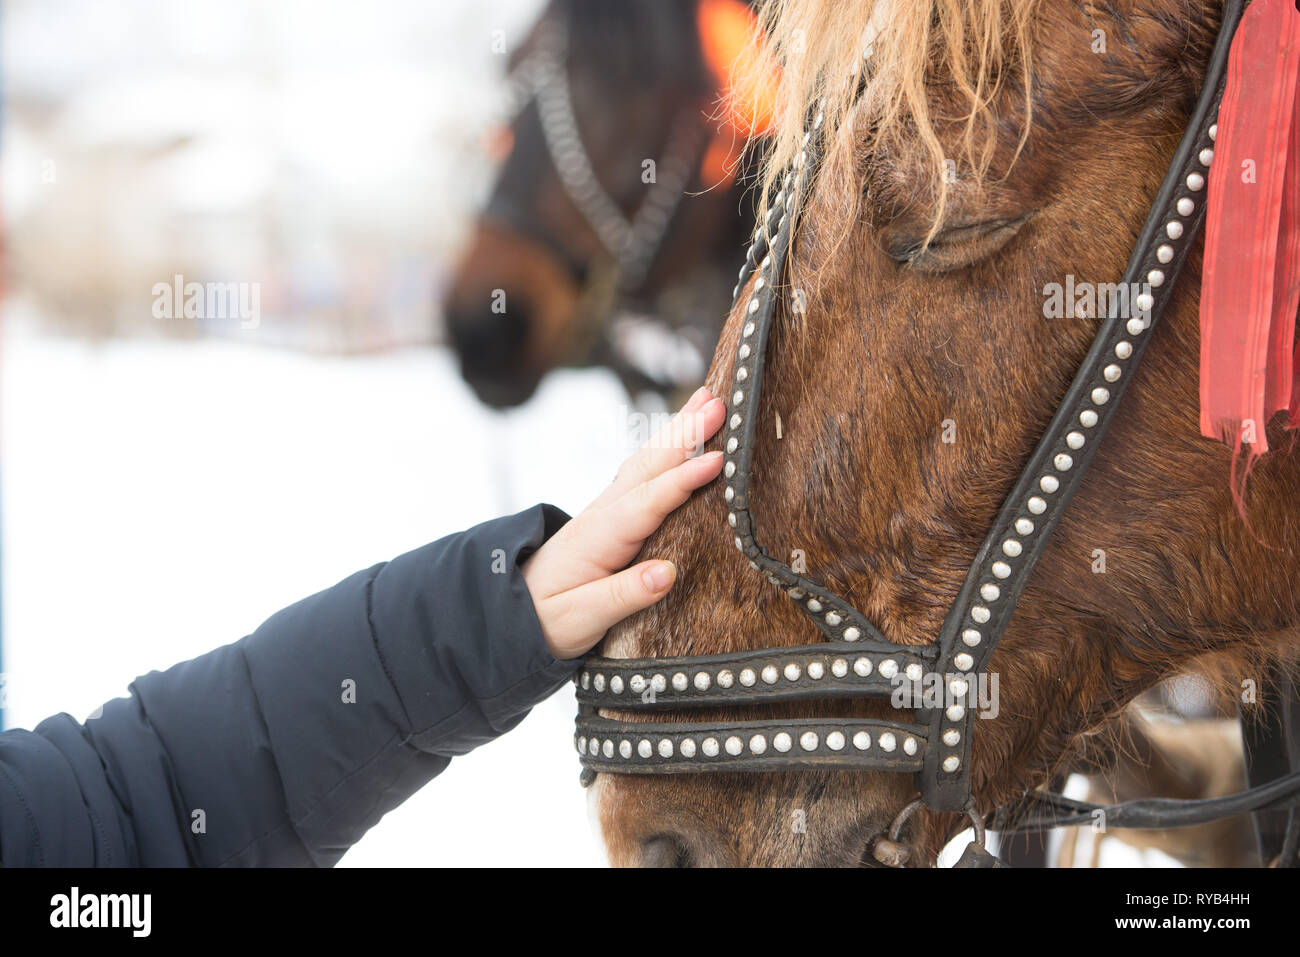 La jeune fille touche le visage du cheval avec sa main. hild's part traits une face du cheval dans une bride. Banque D'Images